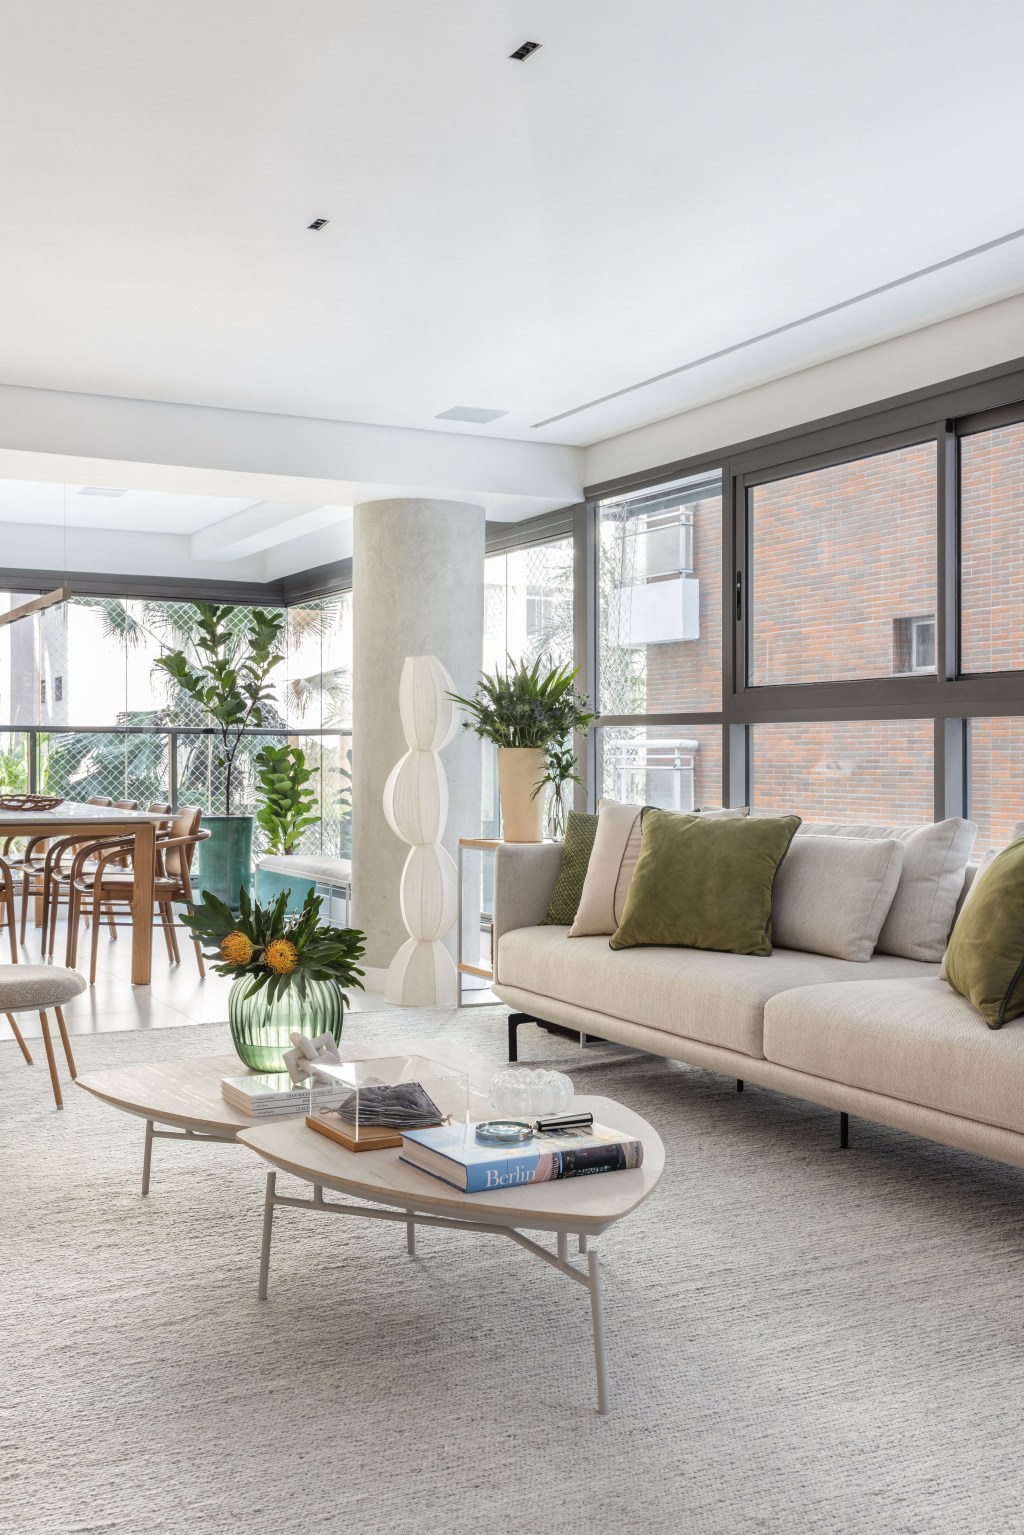 Décor neutro e ambientes integrados e fluidos marcam apartamento de 140 m². Projeto de Paula Muller. Na foto, sala de estar com sofá branco, varanda integrada e paredes de vidro.